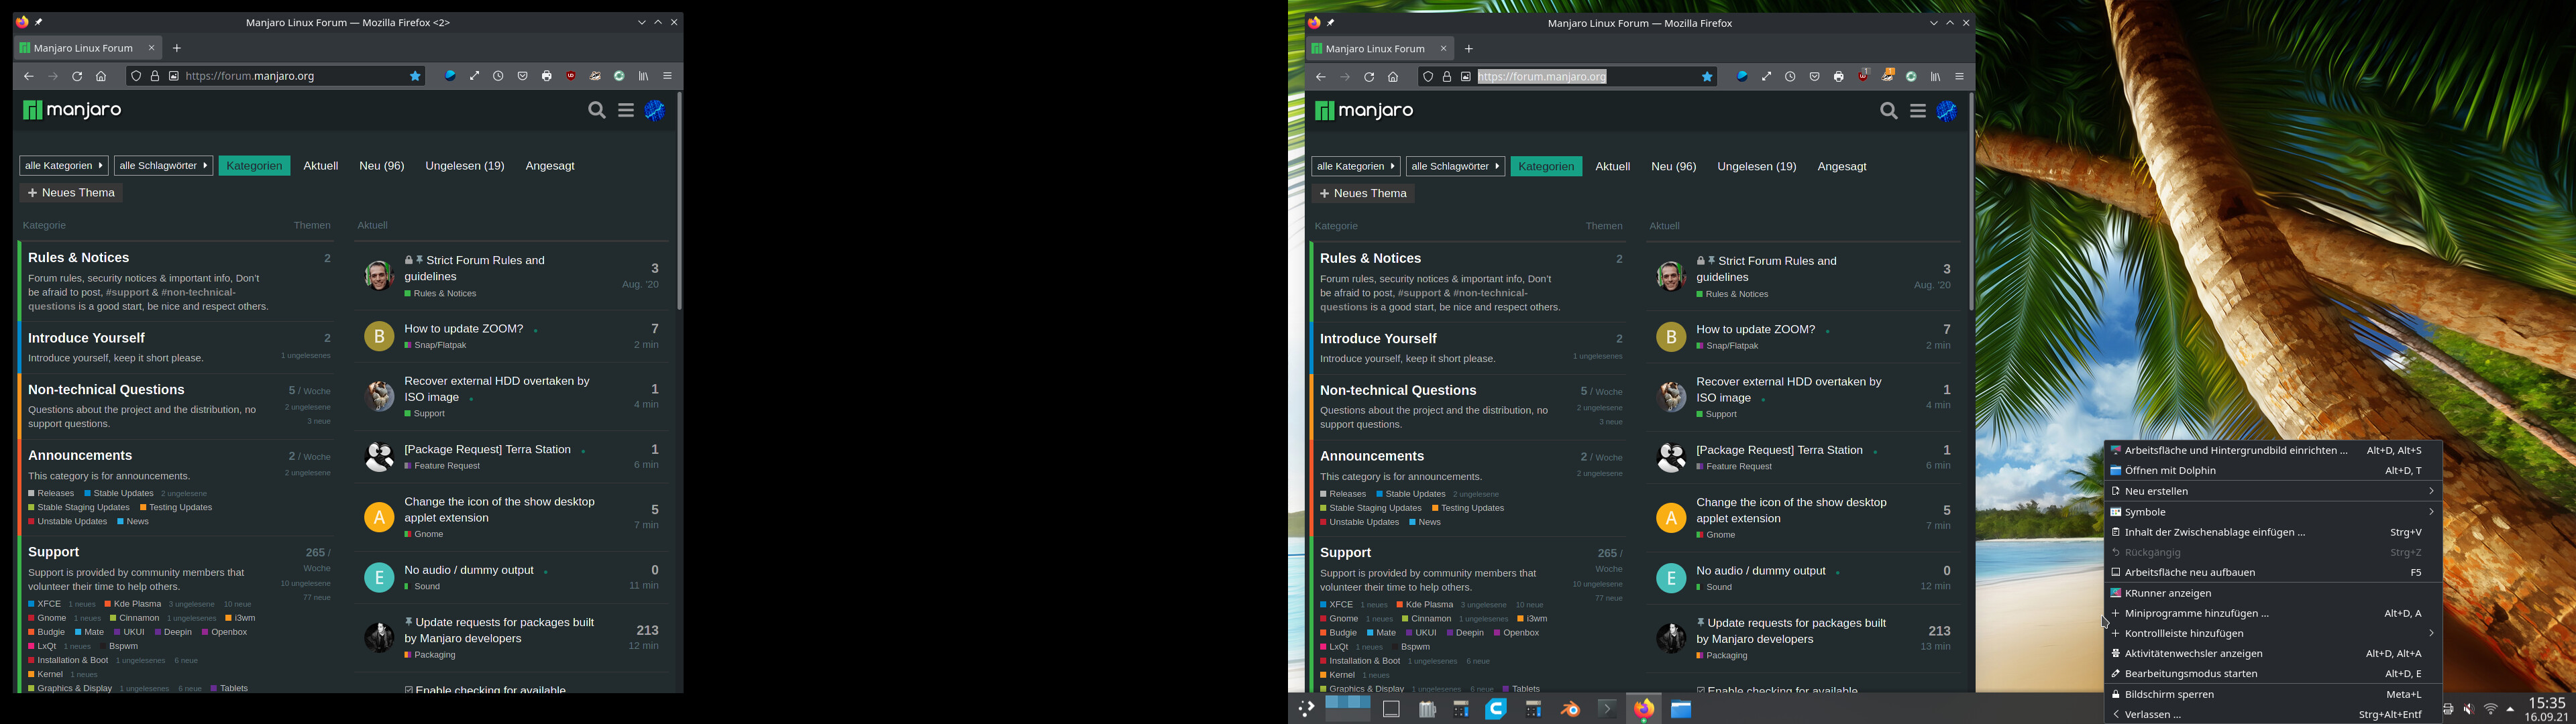 KDE PLasma second Desktop-wallpaper stays black & no menu - Graphics &  Display - Manjaro Linux Forum